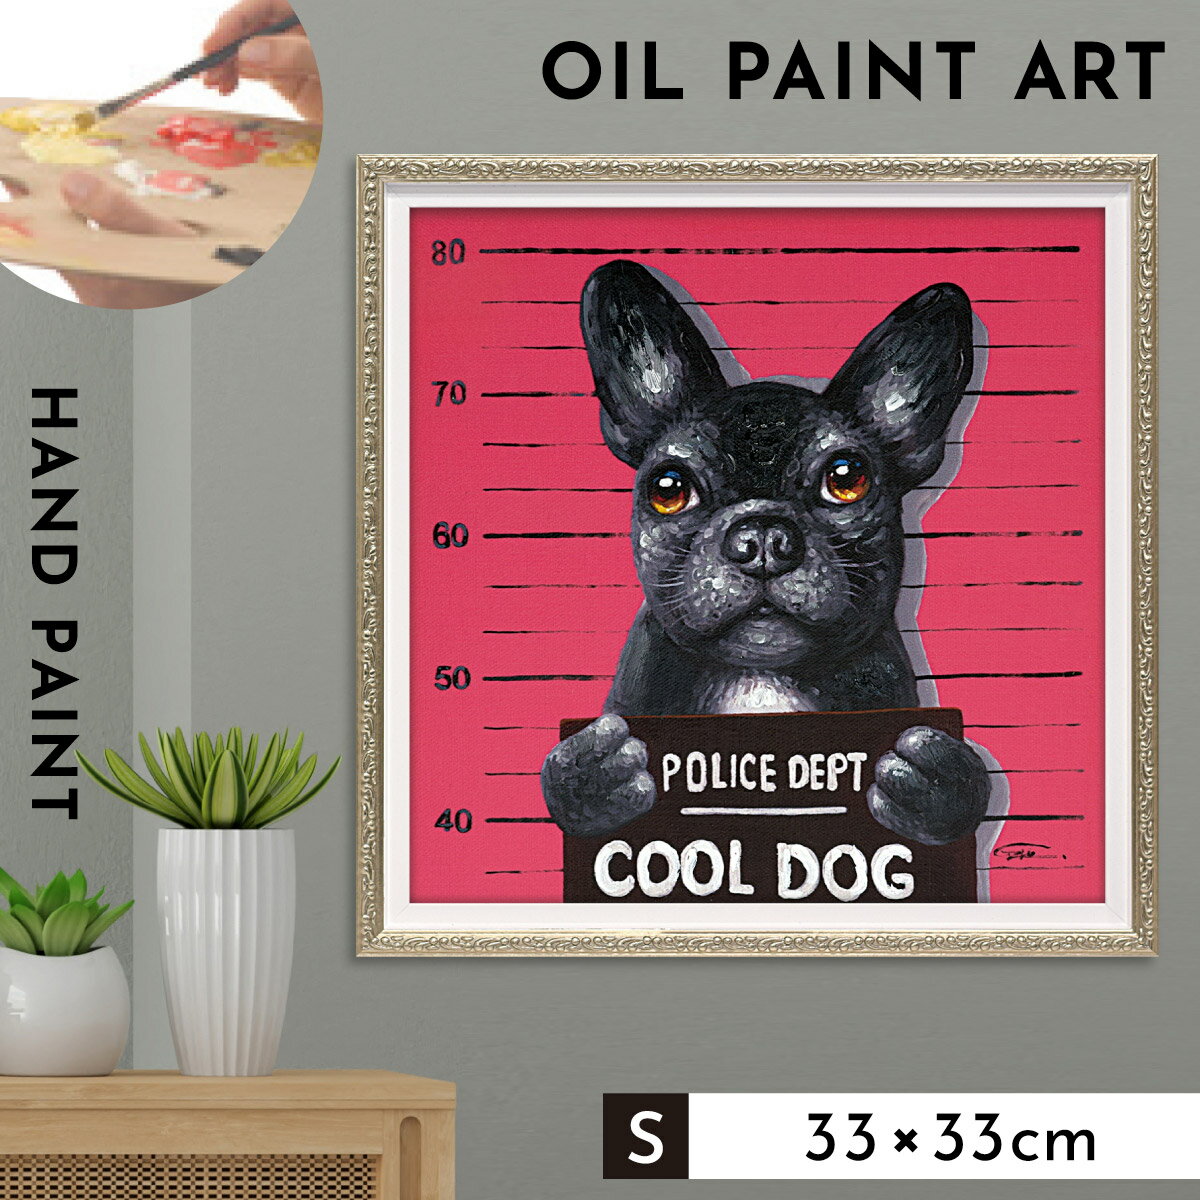 アートパネル 犬 アートフレーム 油絵 アート 絵 インテリア 動物 オイルペイント 北欧 オイルペイントアート マグロック 33×33cm